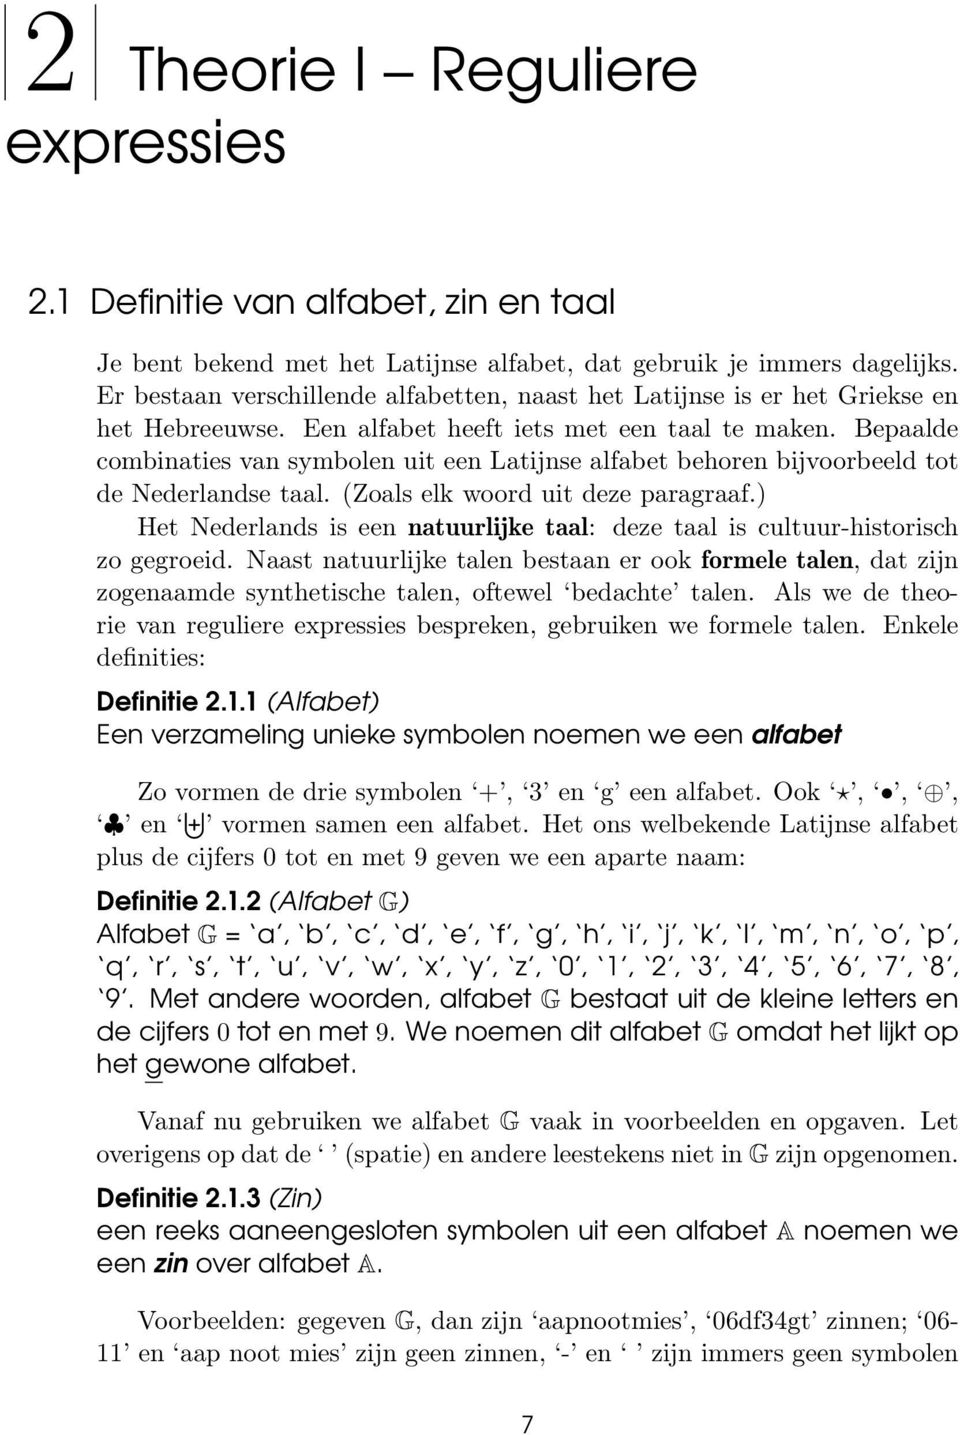 Bepaalde combinaties van symbolen uit een Latijnse alfabet behoren bijvoorbeeld tot de Nederlandse taal. (Zoals elk woord uit deze paragraaf.